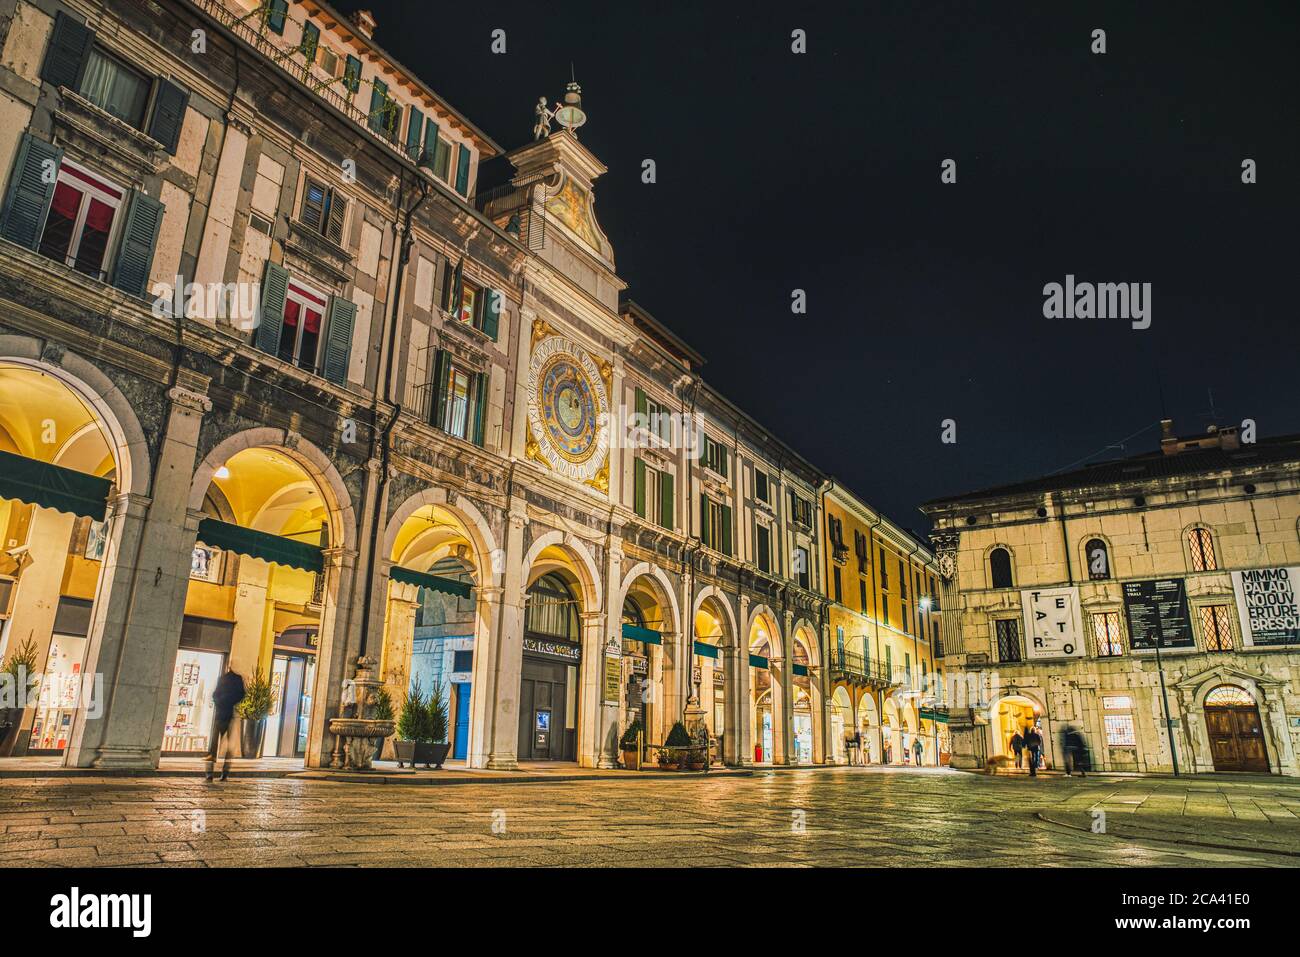 Piazza Loggia (Loggia-Platz) Mit seiner Kolonnade oder Arkade ist der Hauptplatz in Brescia ist leider berühmt für einen Bombenangriff auf Anti-Facist Demonstranten Stockfoto